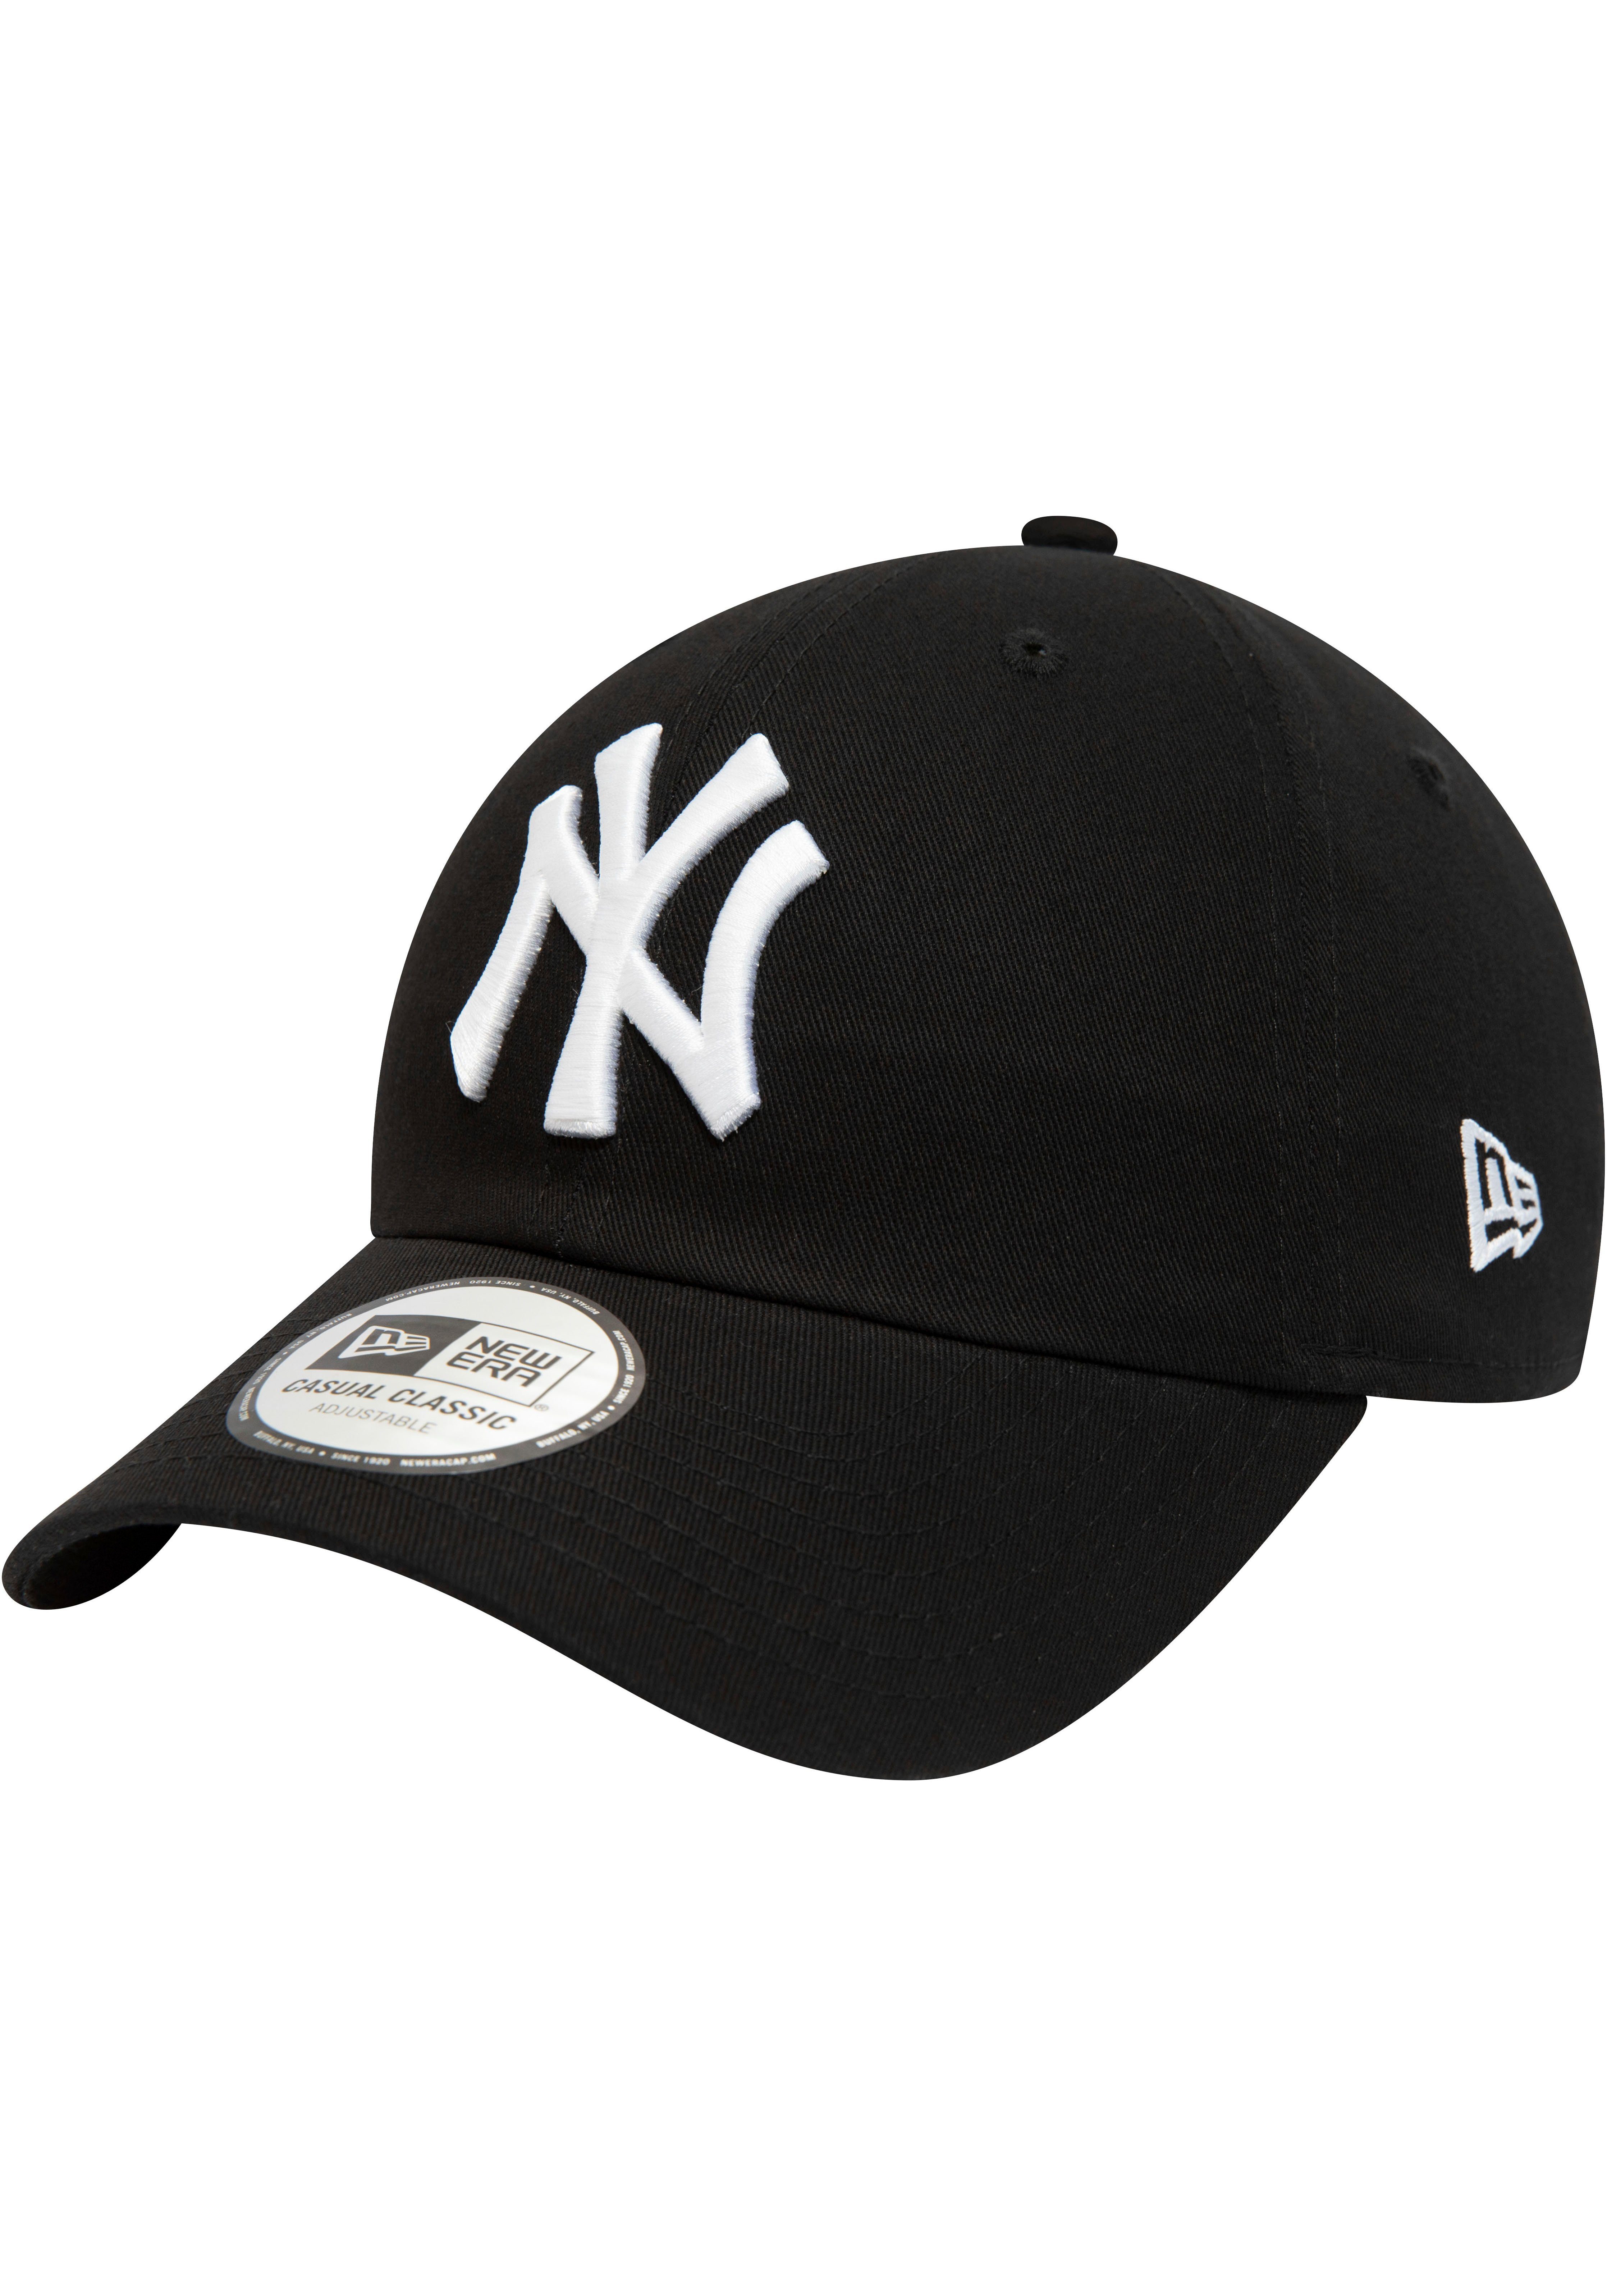 New Era Baseball Cap Cap Cap New Era 940Leag NY